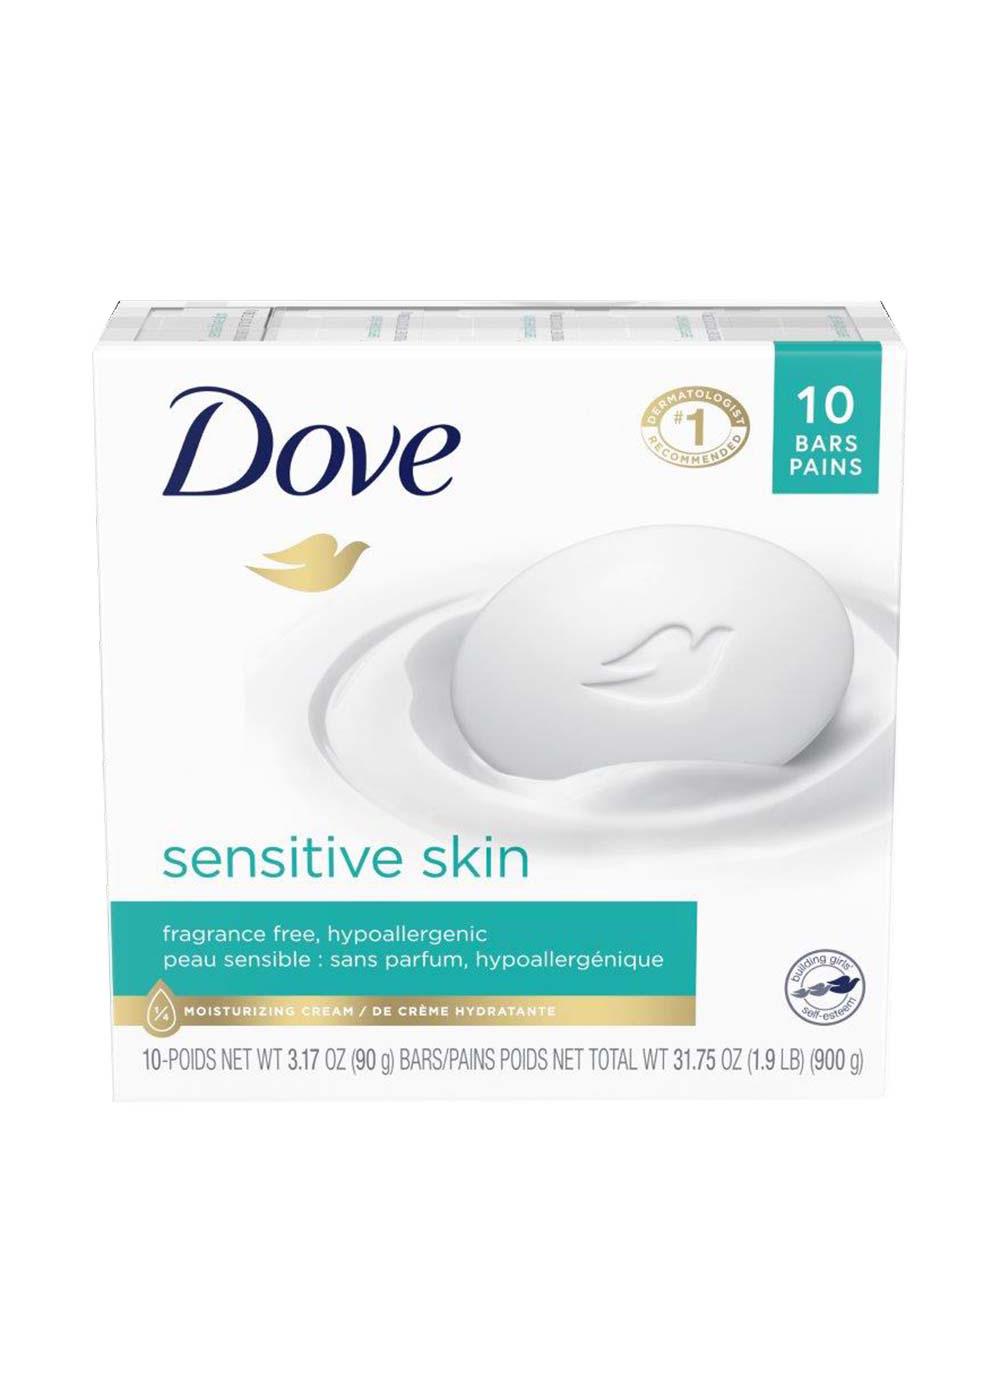 Dove Sensitive Skin Bar Soap; image 1 of 2